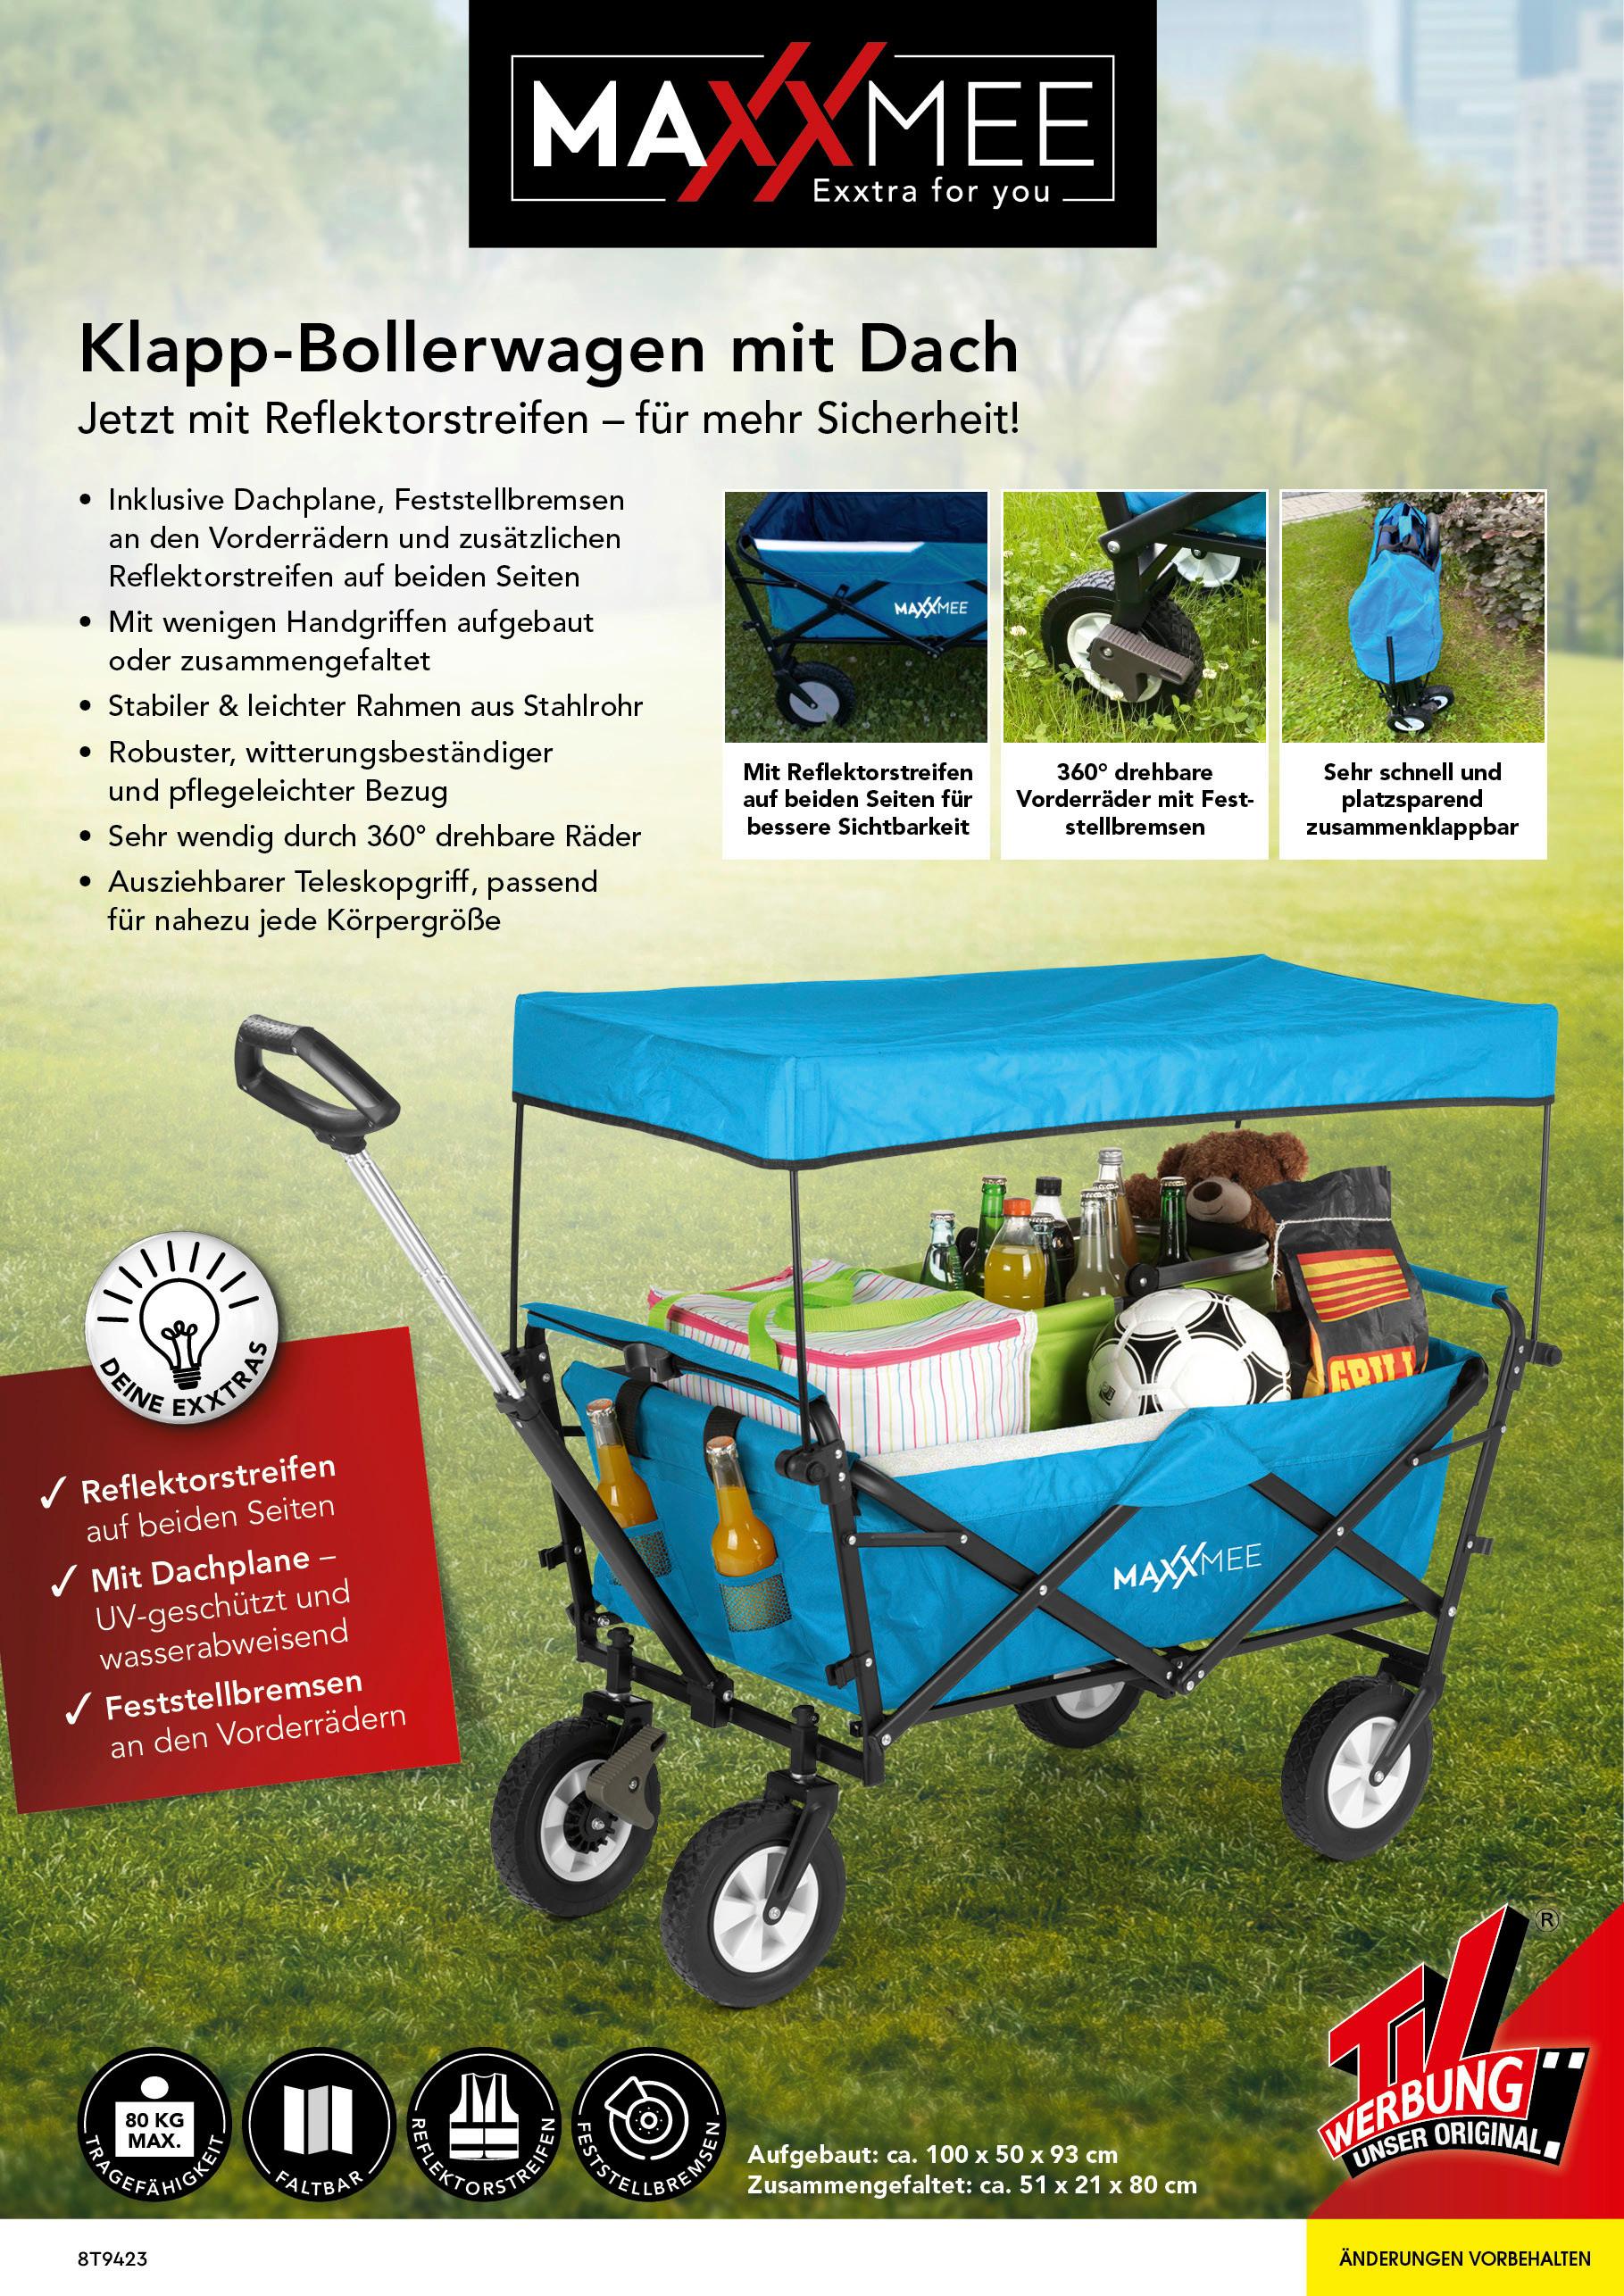 Bollerwagen Maxxmee Faltbar Blau Max. Belastbarkeit 80 Kg - Blau, Basics, Kunststoff/Textil (106/55/92cm) - TV - Unser Original